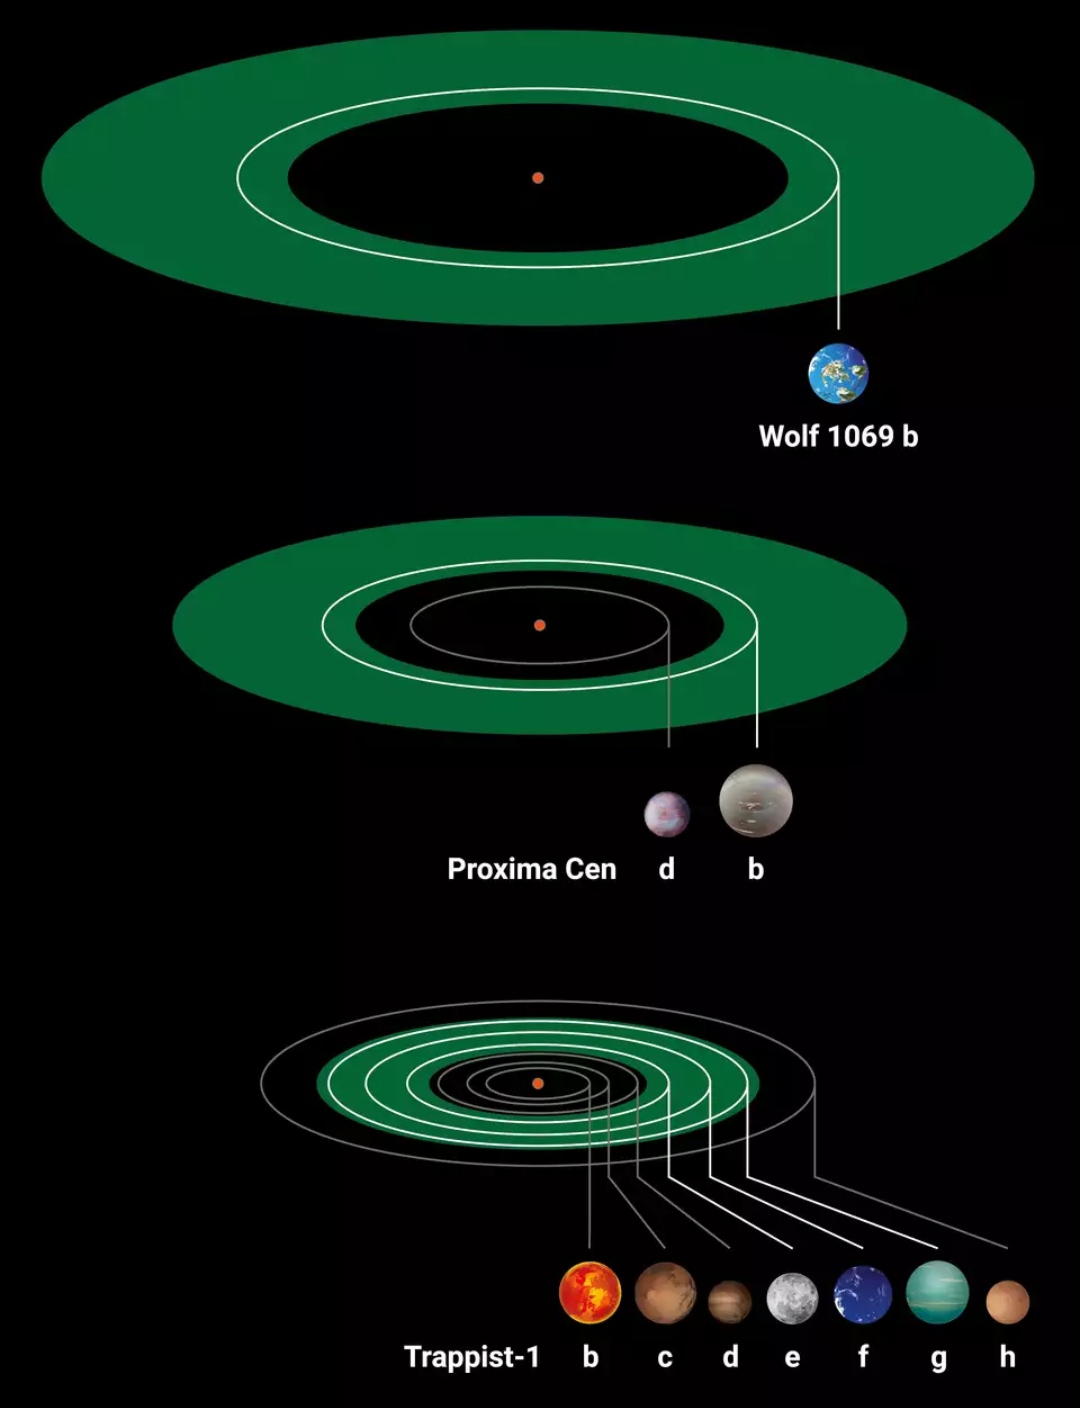 сравниваются три экзопланетные системы звезд-красных карликов